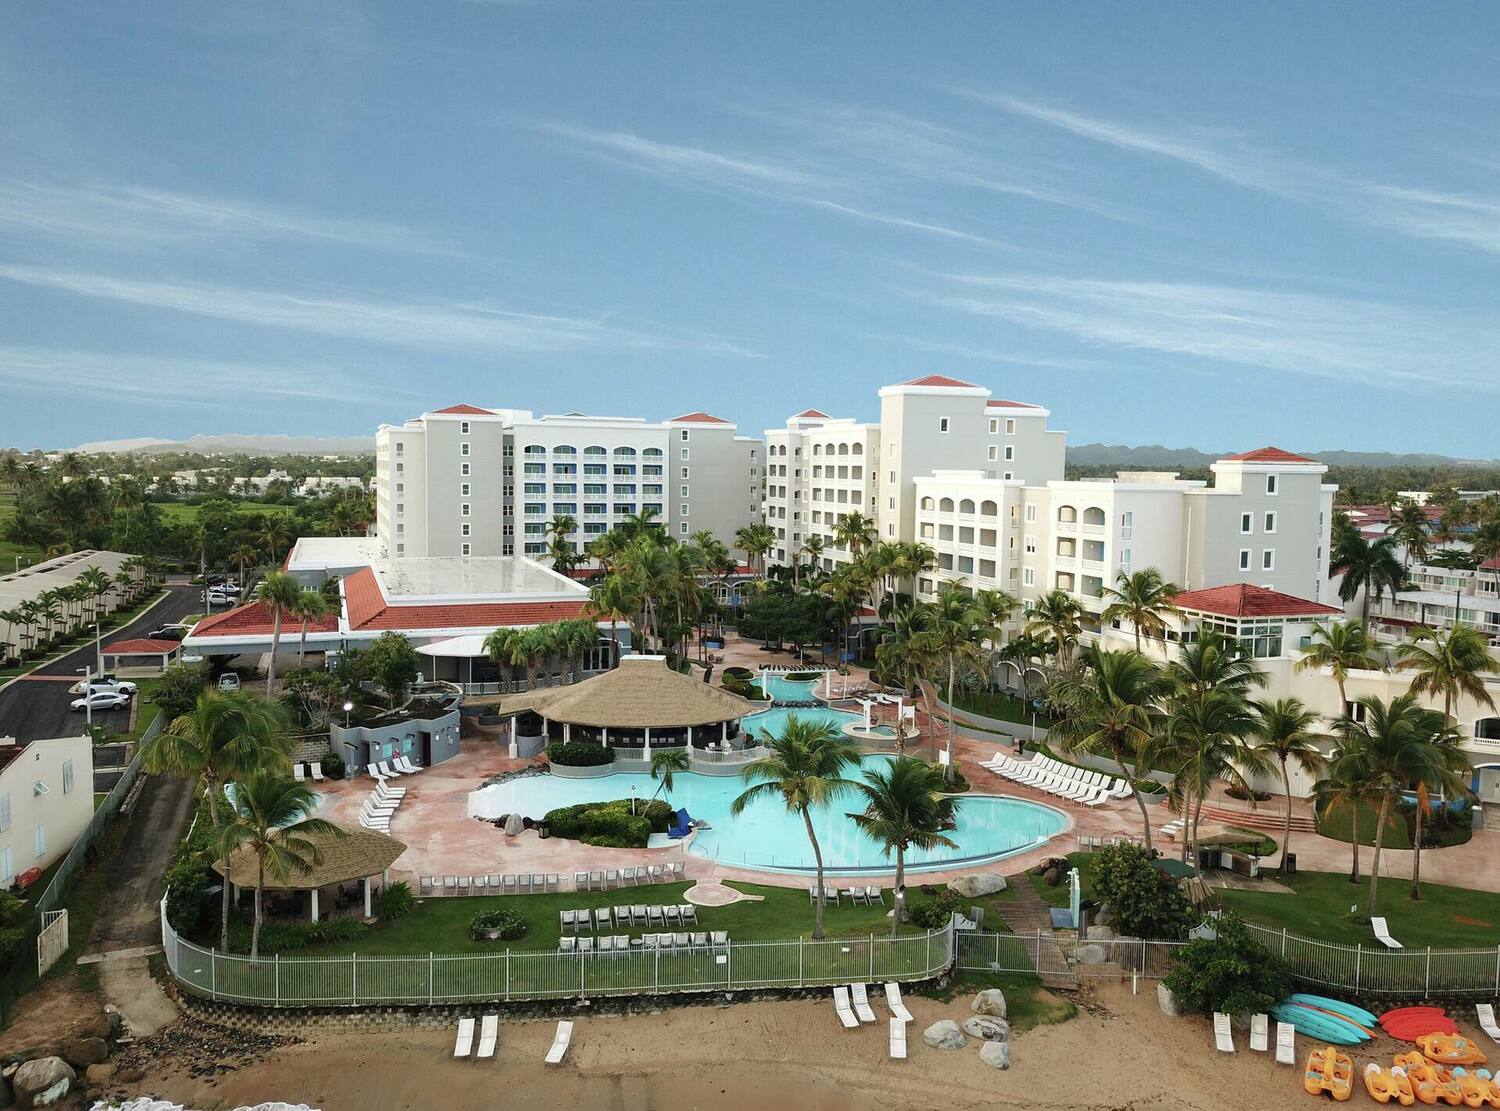 Room Attendant - Embassy Suites Dorado del Mar Beach Resort Job ...